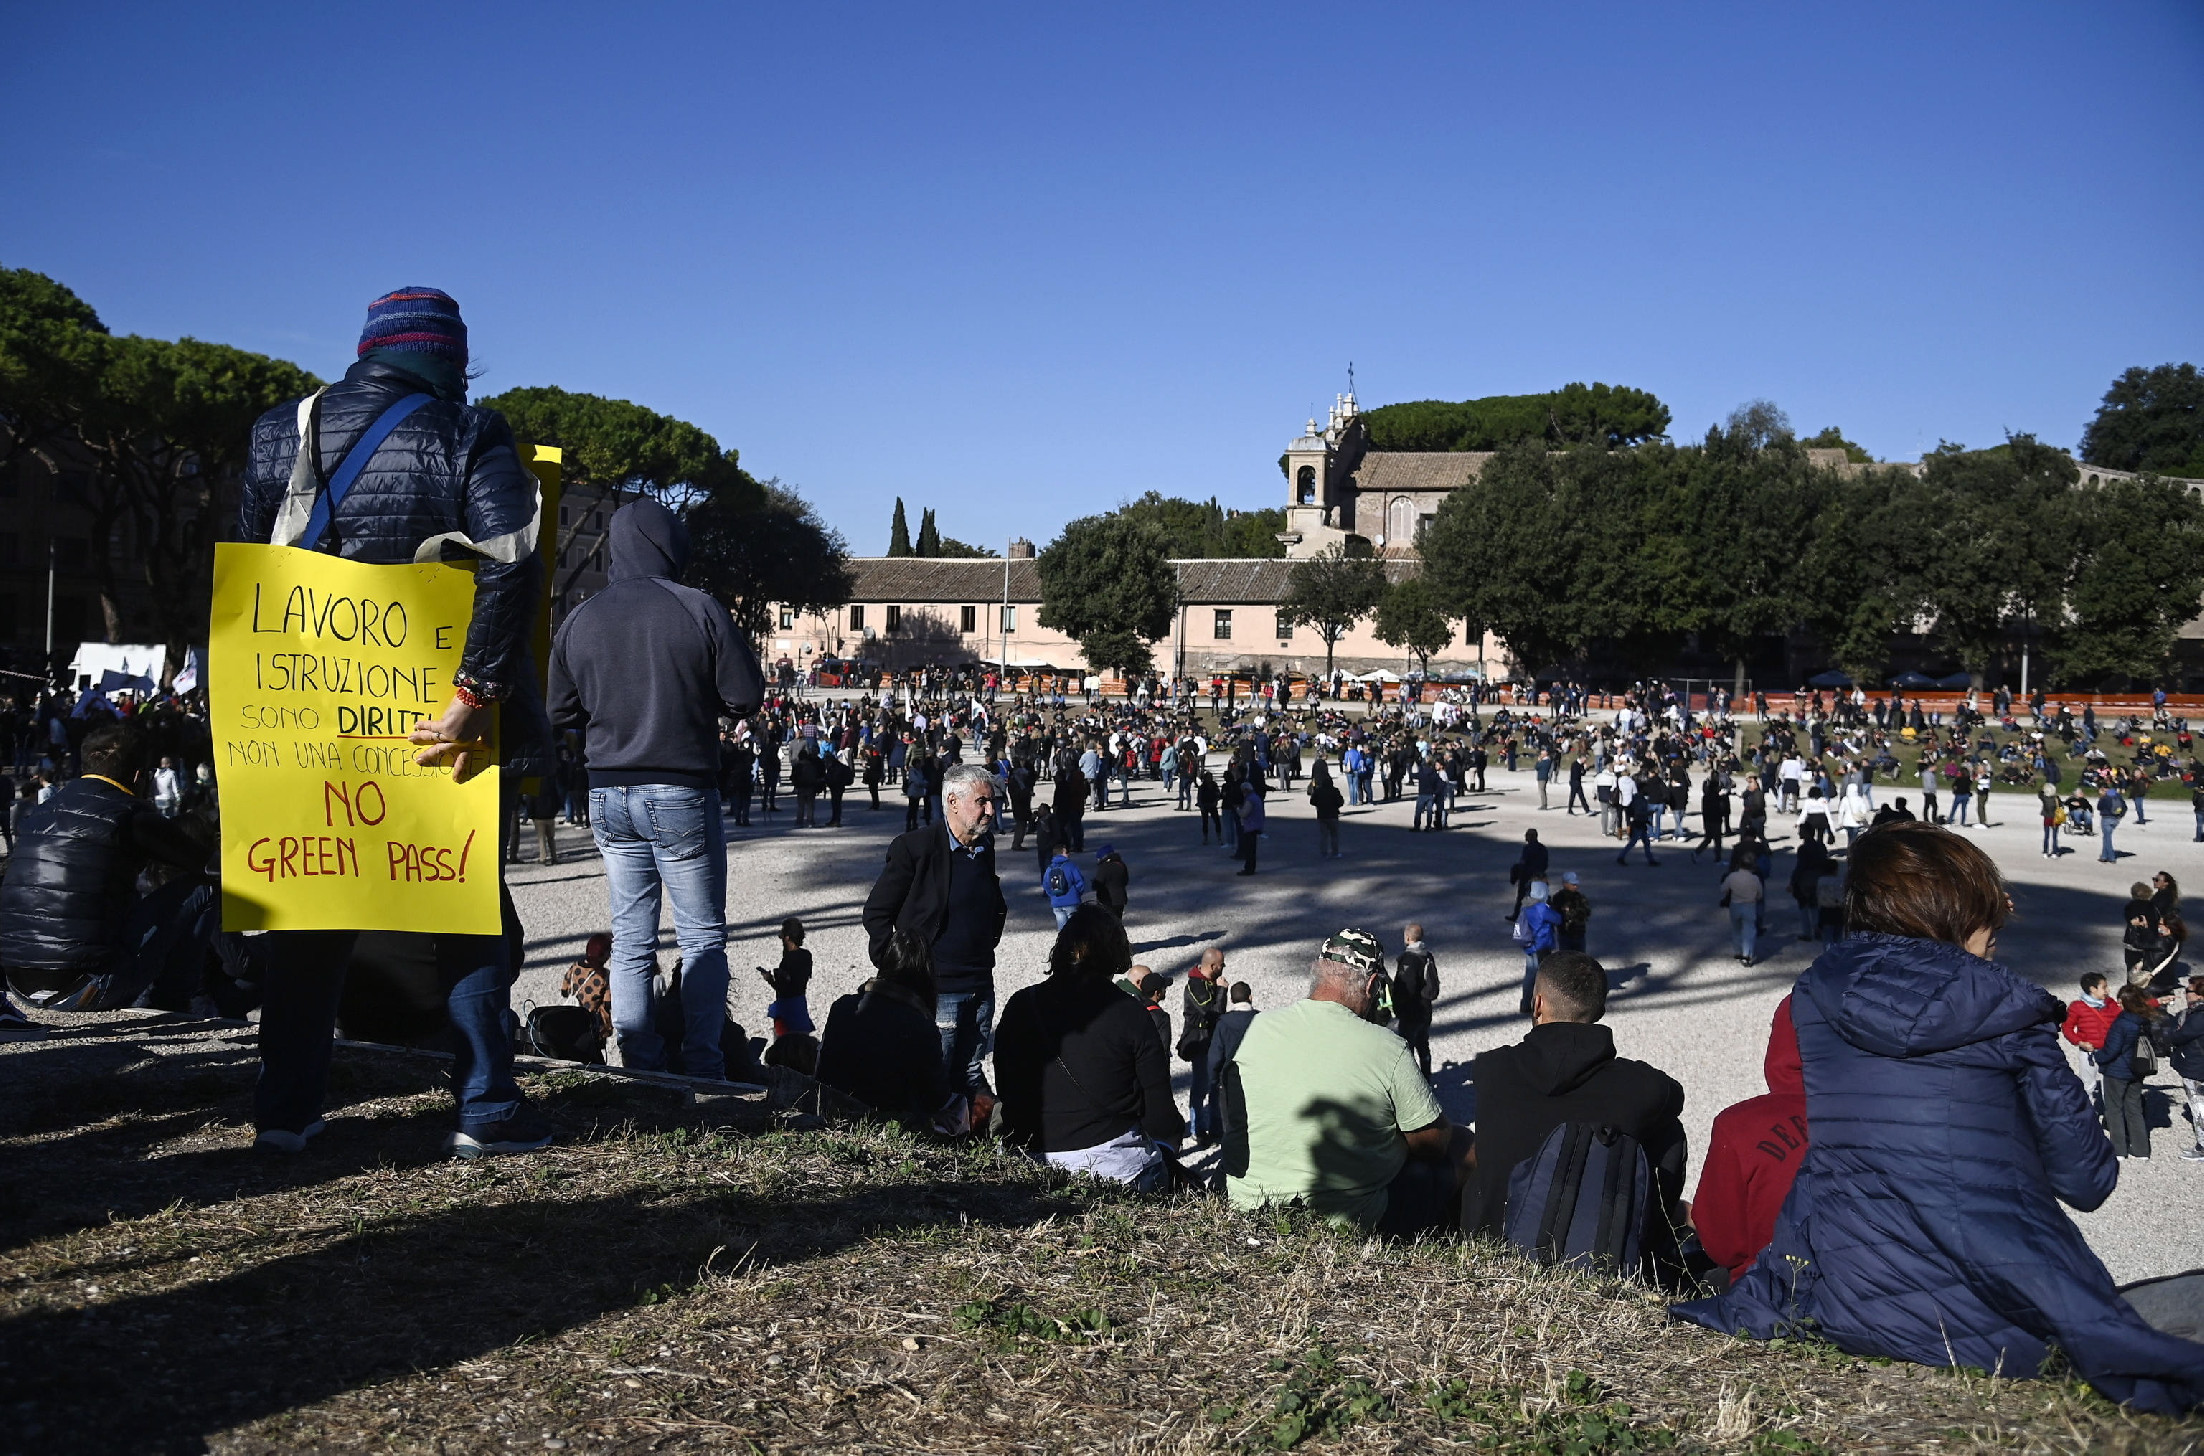 Tízezrek tiltakoztak Rómában a szélsőjobboldal ellen